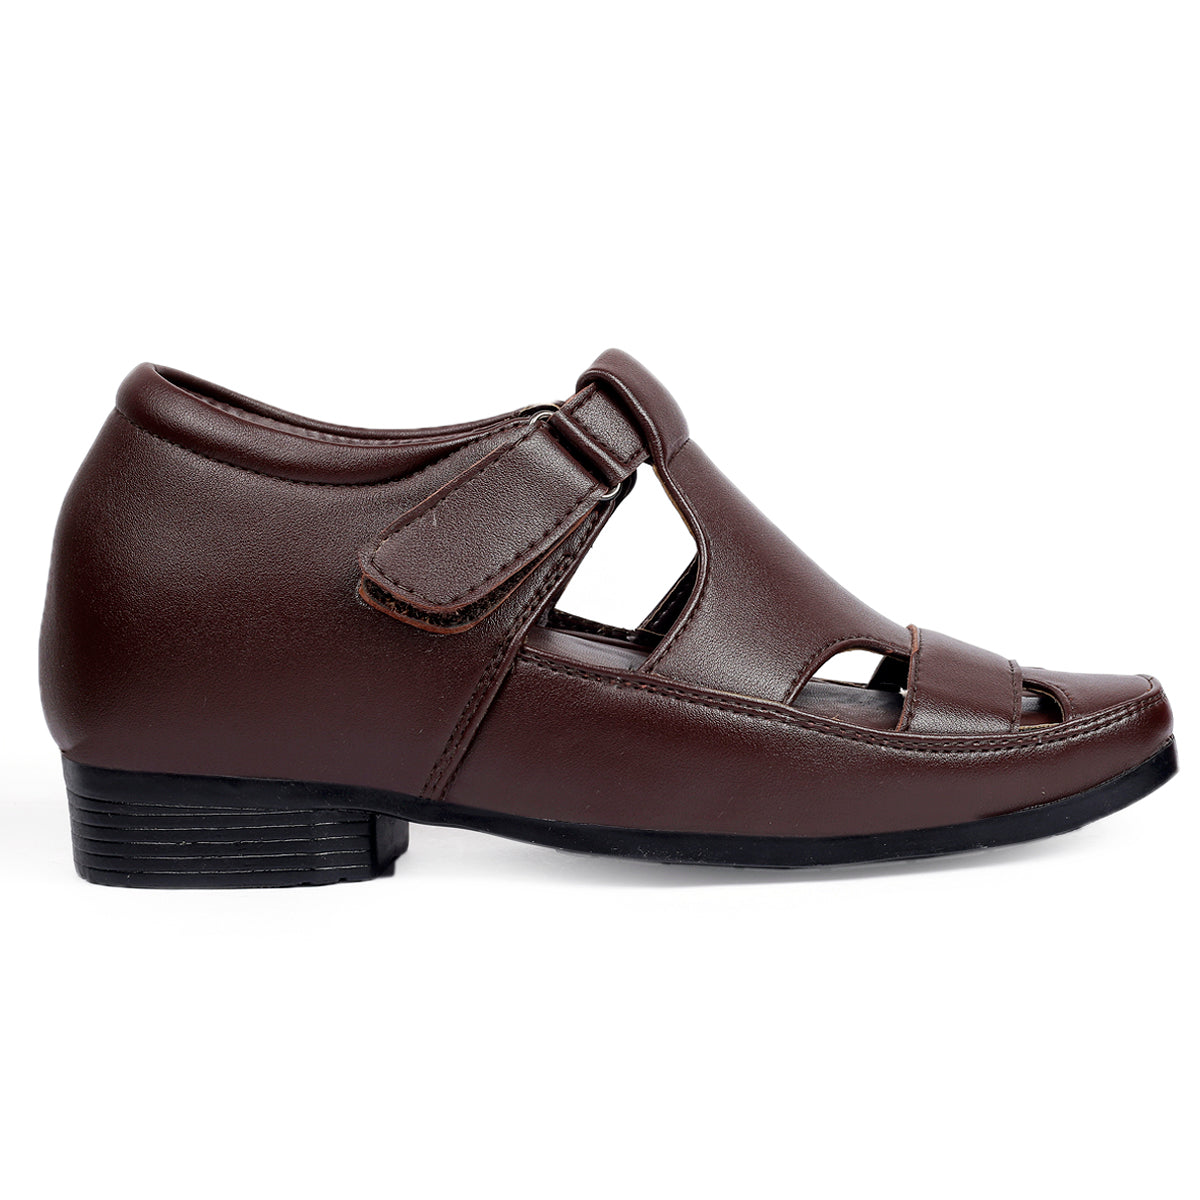 Buy Brown Sandals for Men by Hitz Online | Ajio.com